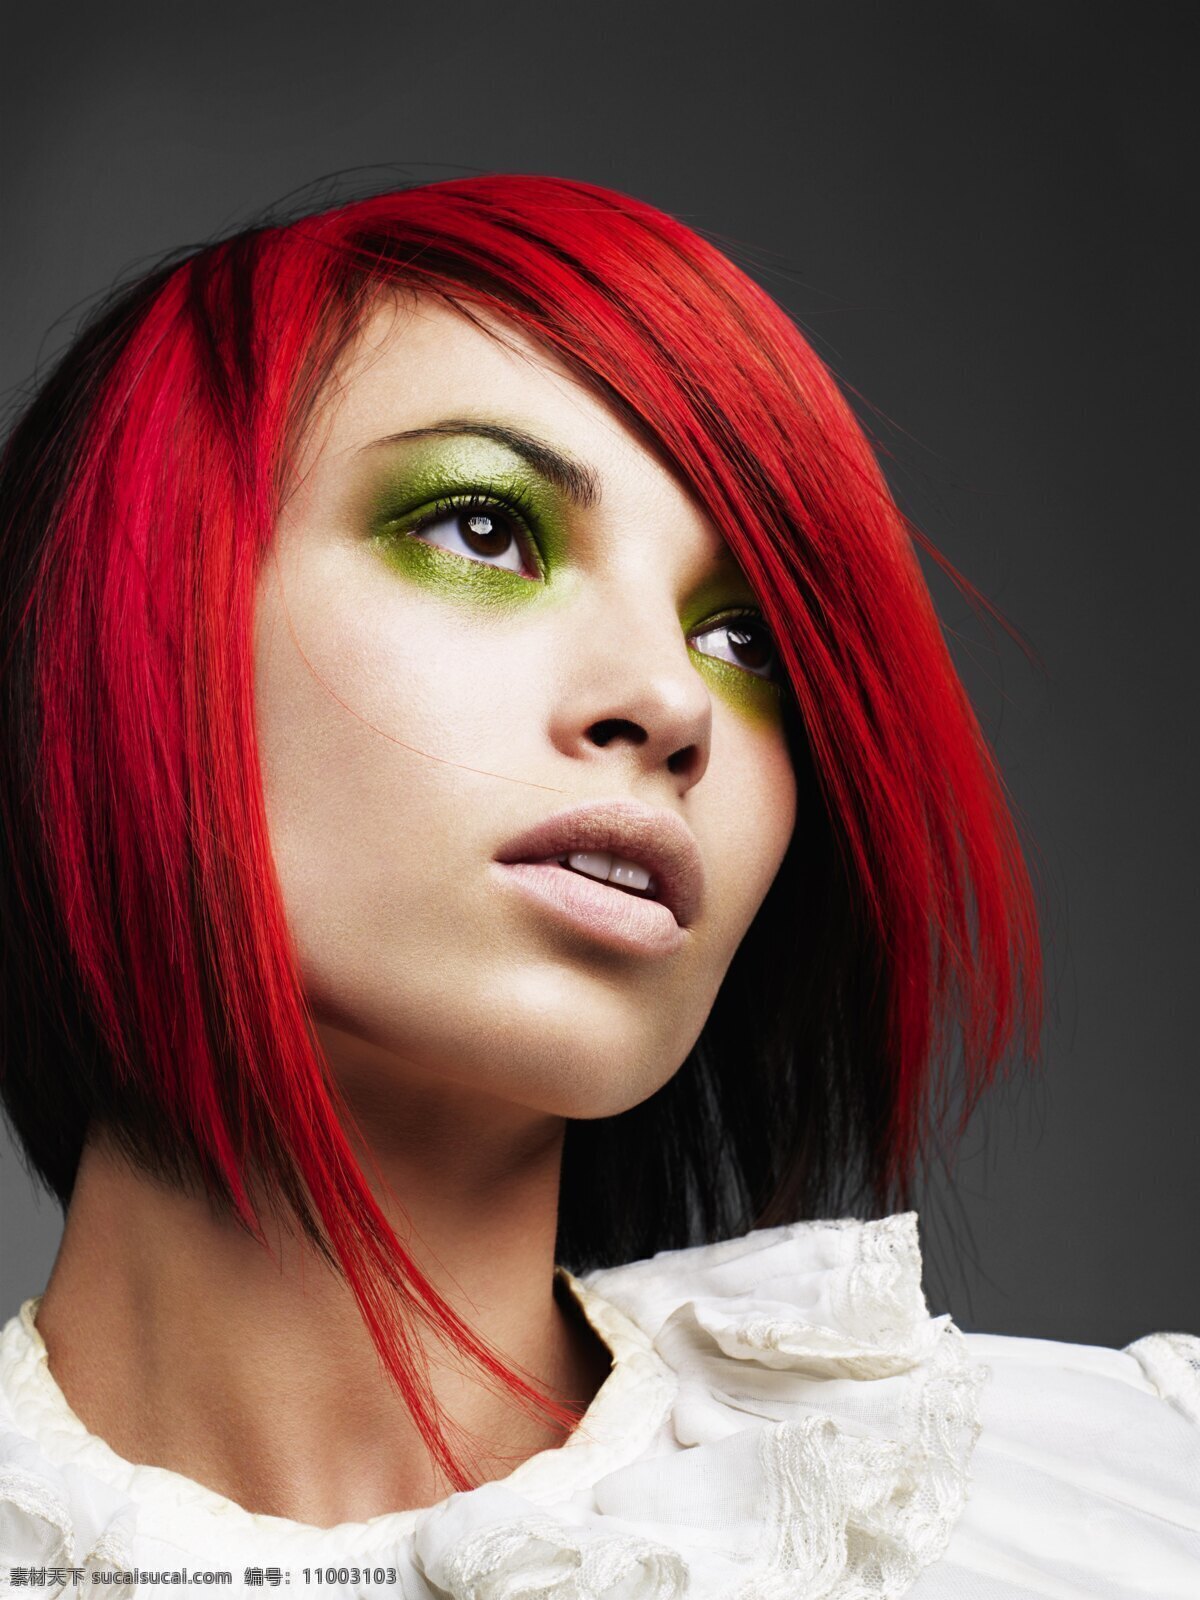 红发美女 红发 美女 发型 发廊 理发店 模特 女性女人 人物图库